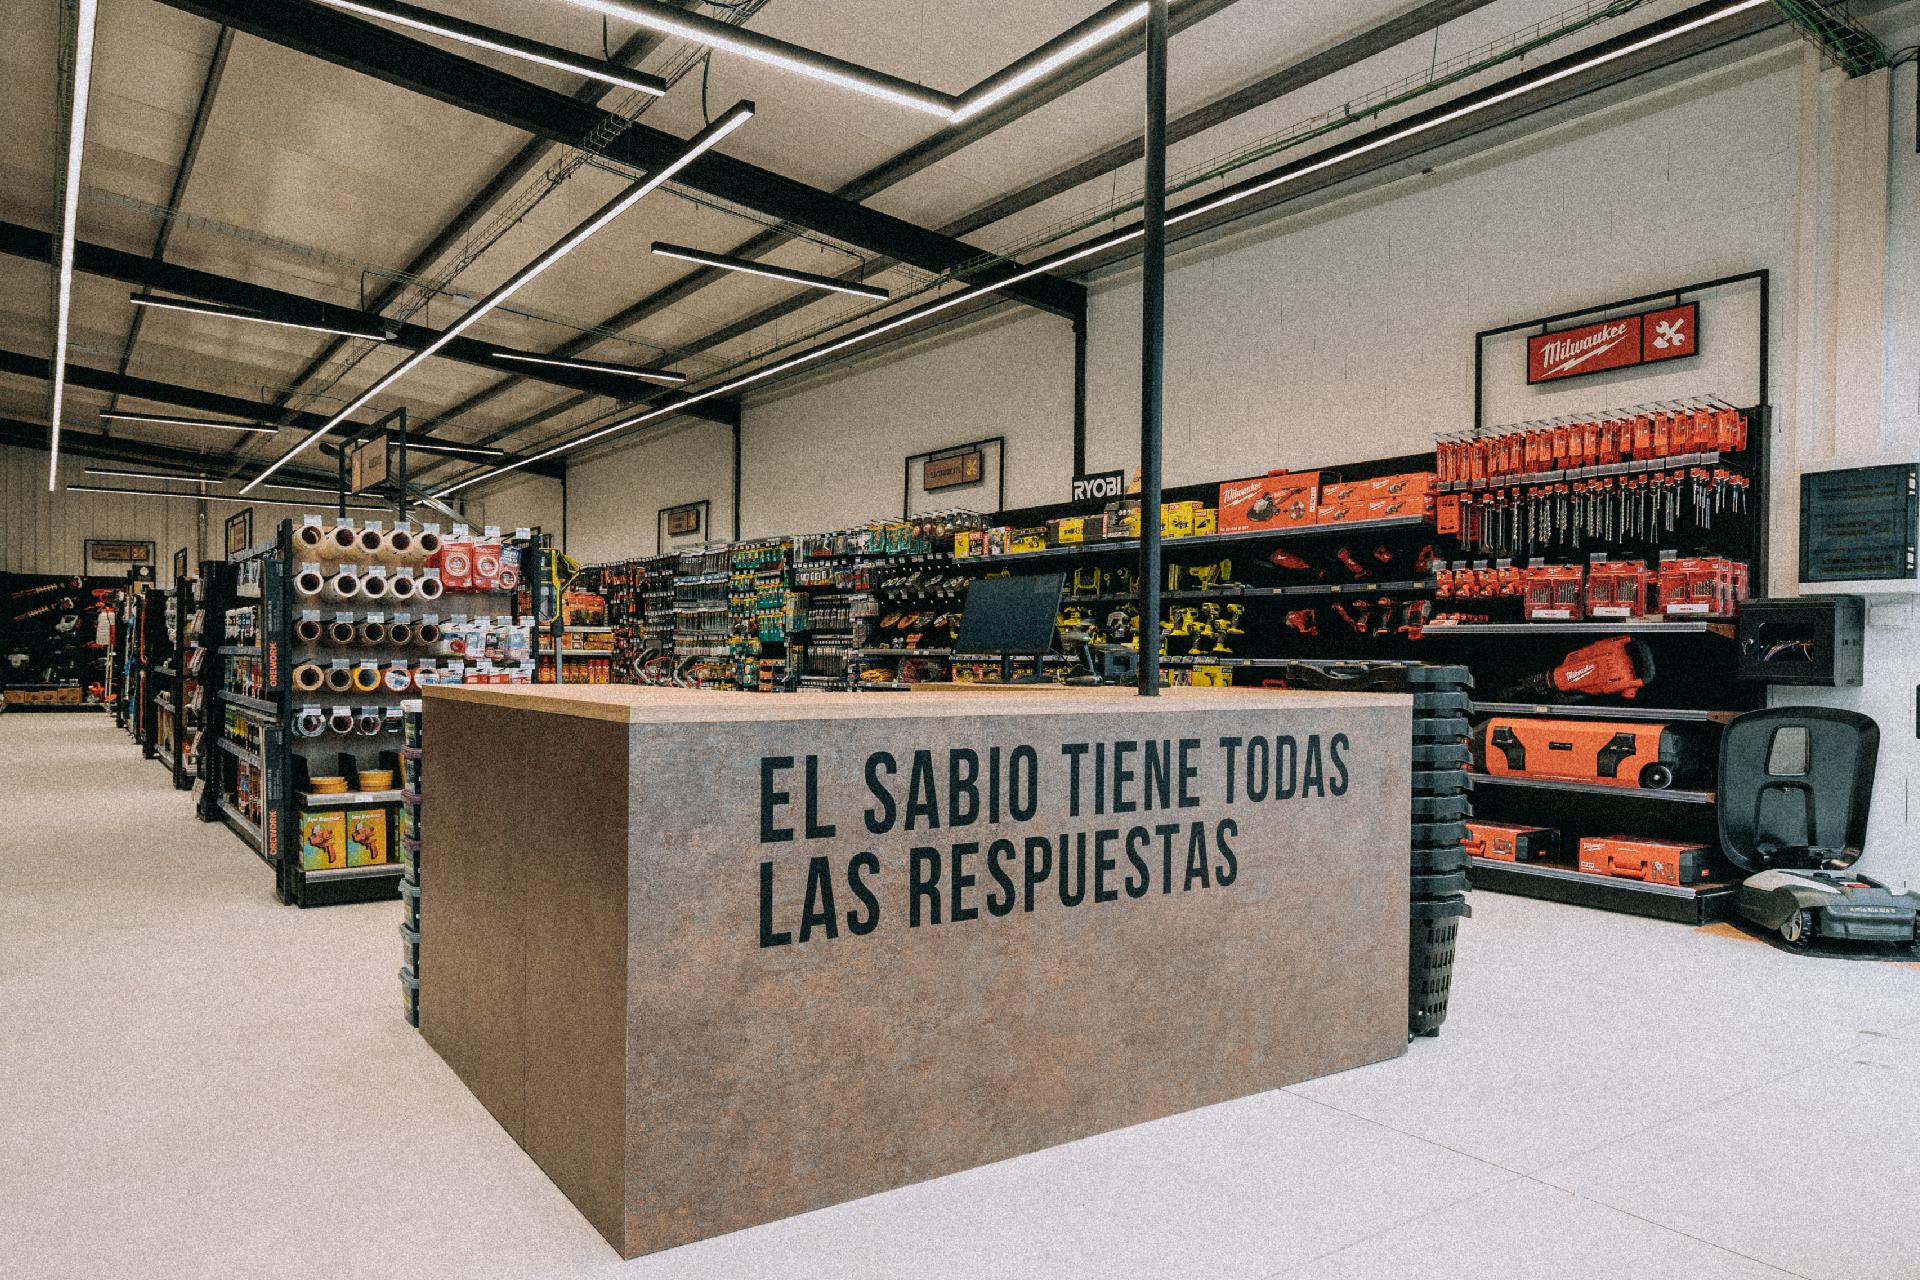 El Sabio consolida su presencia en el sector con 22 tiendas en España tras la apertura de seis establecimientos en lo que va de año